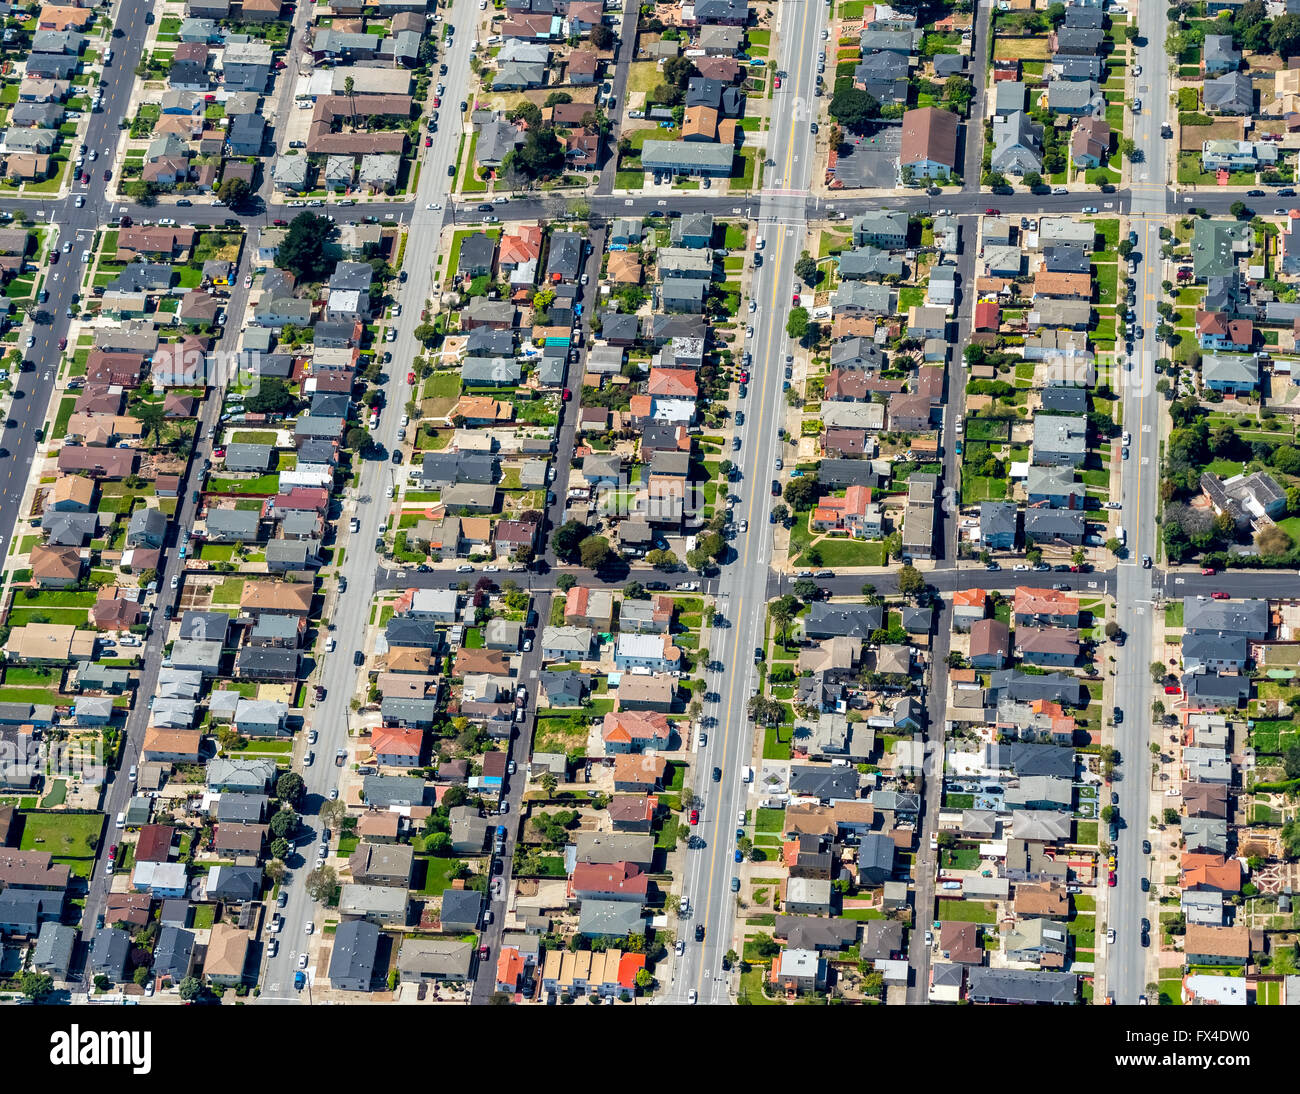 Luftaufnahme, typisch amerikanische Wohngegend, Doppelhaushälfte Häuser, San Jose, San Francisco Bay Area, Vereinigte Staaten von Amerika Stockfoto